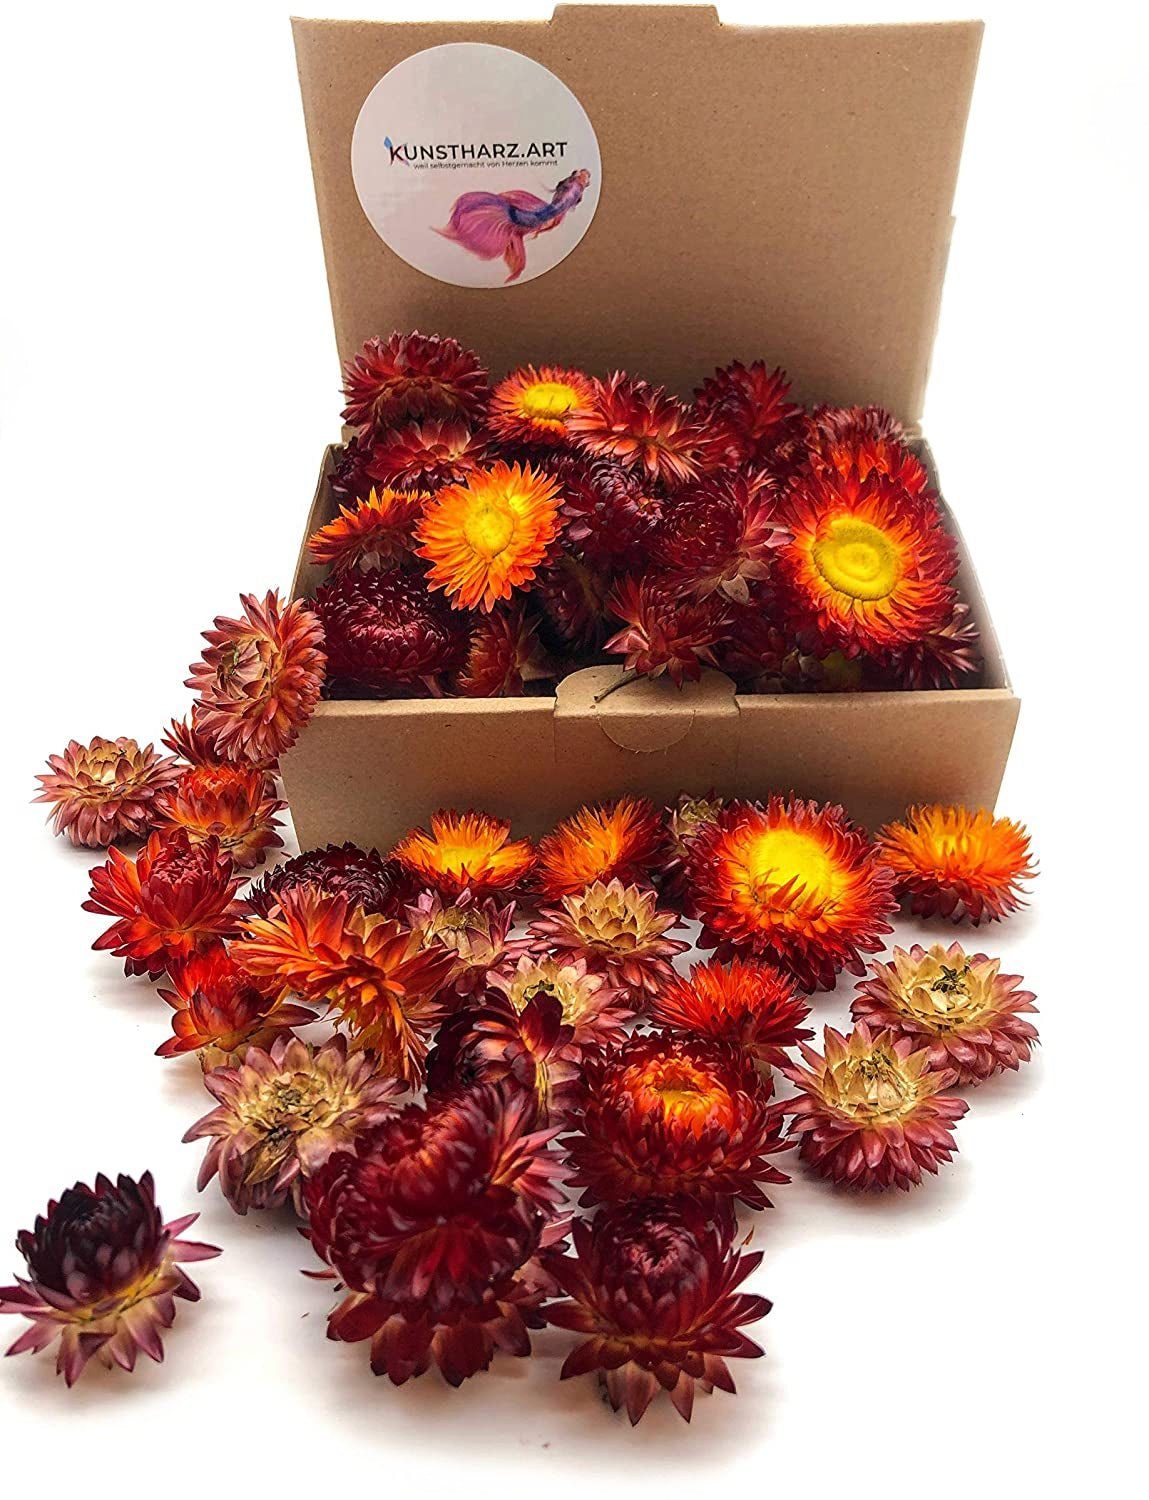 Trockenblume Strohblumenköpfe Helichrysum getrocknet: gemischt oder farblich sortiert - Rot, Kunstharz.Art